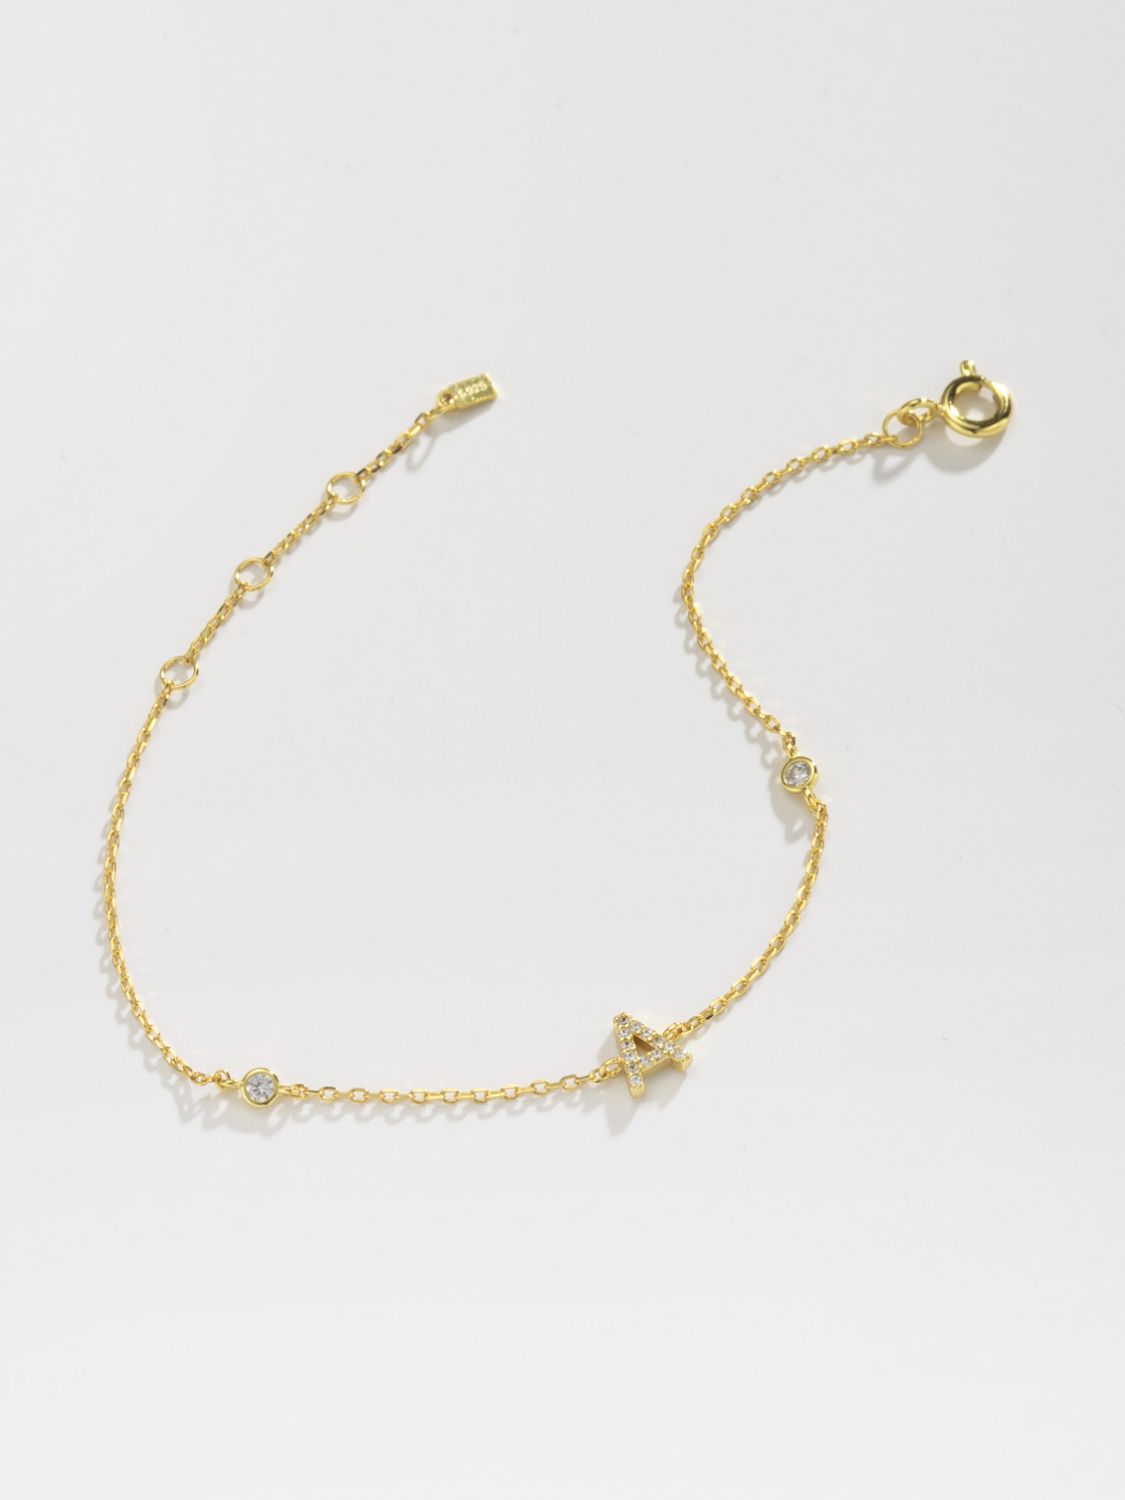 A To F Zircon 925 Sterling Silver Bracelet - Women’s Jewelry - Bracelets - 2 - 2024